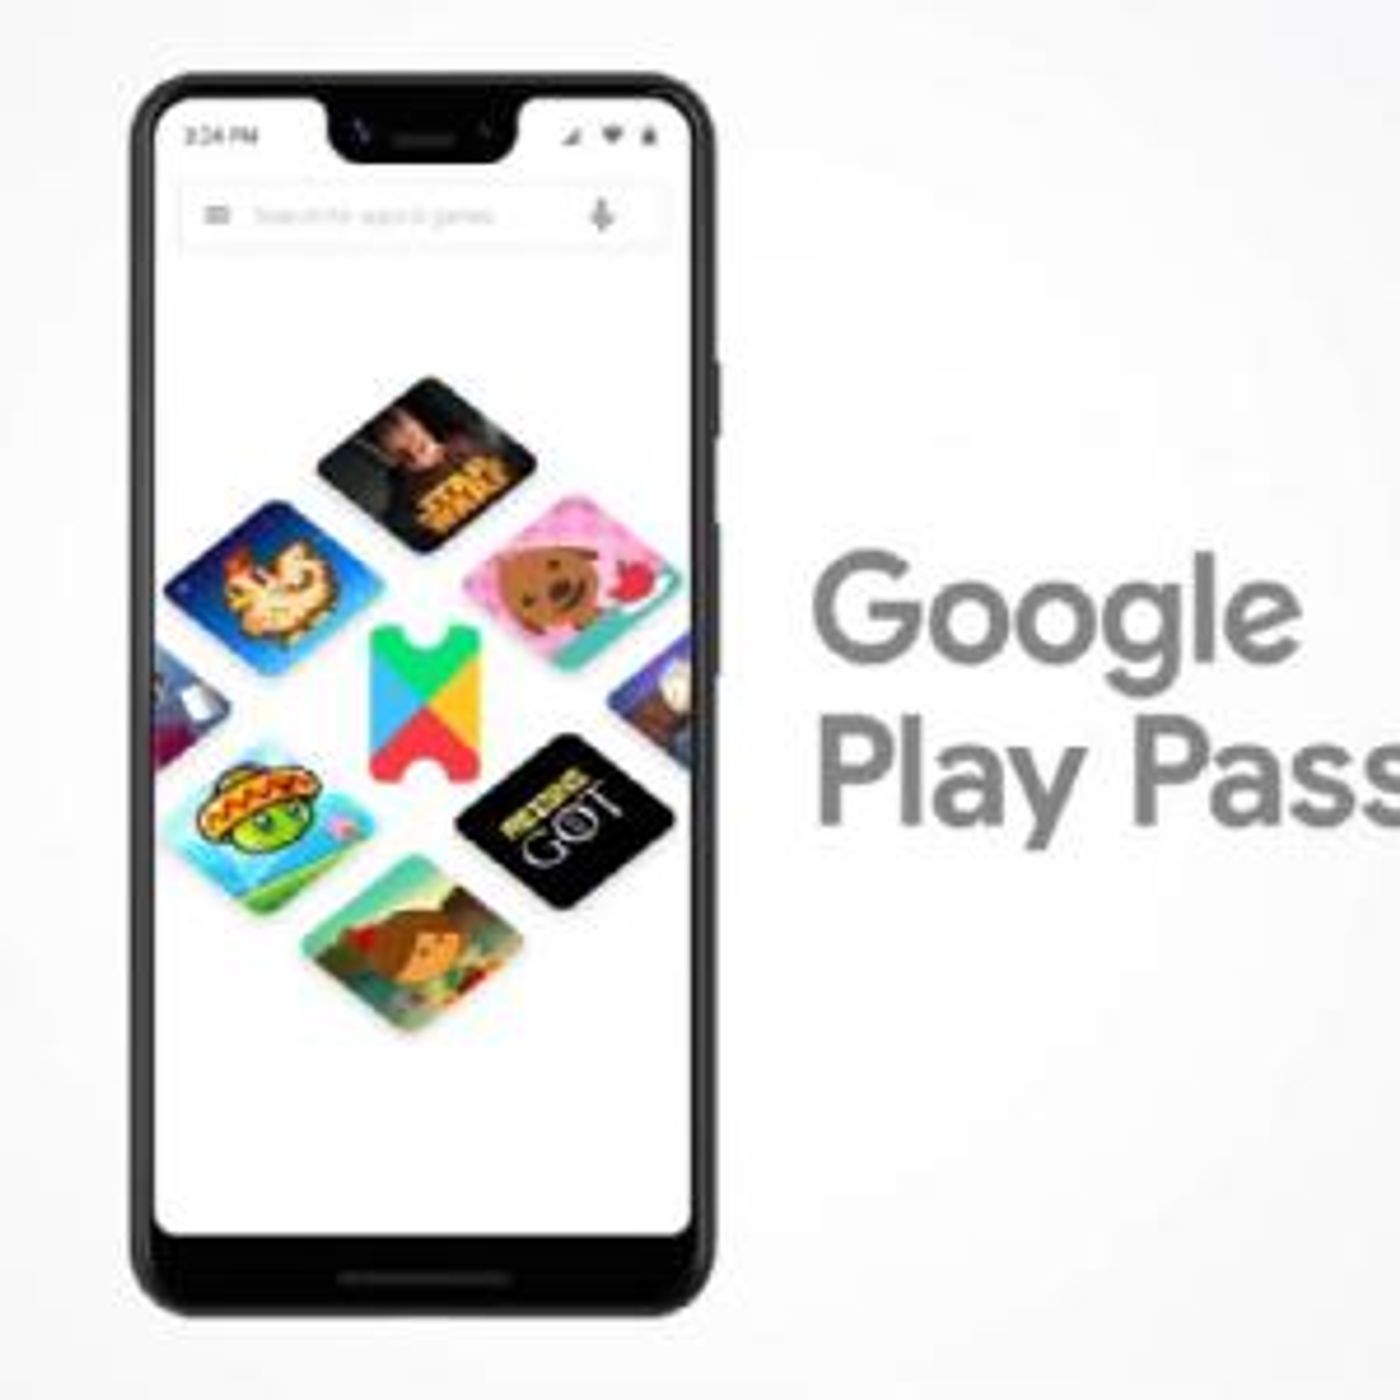 Google Play Pass: Ya disponible Juegos y Apps ilimitadas